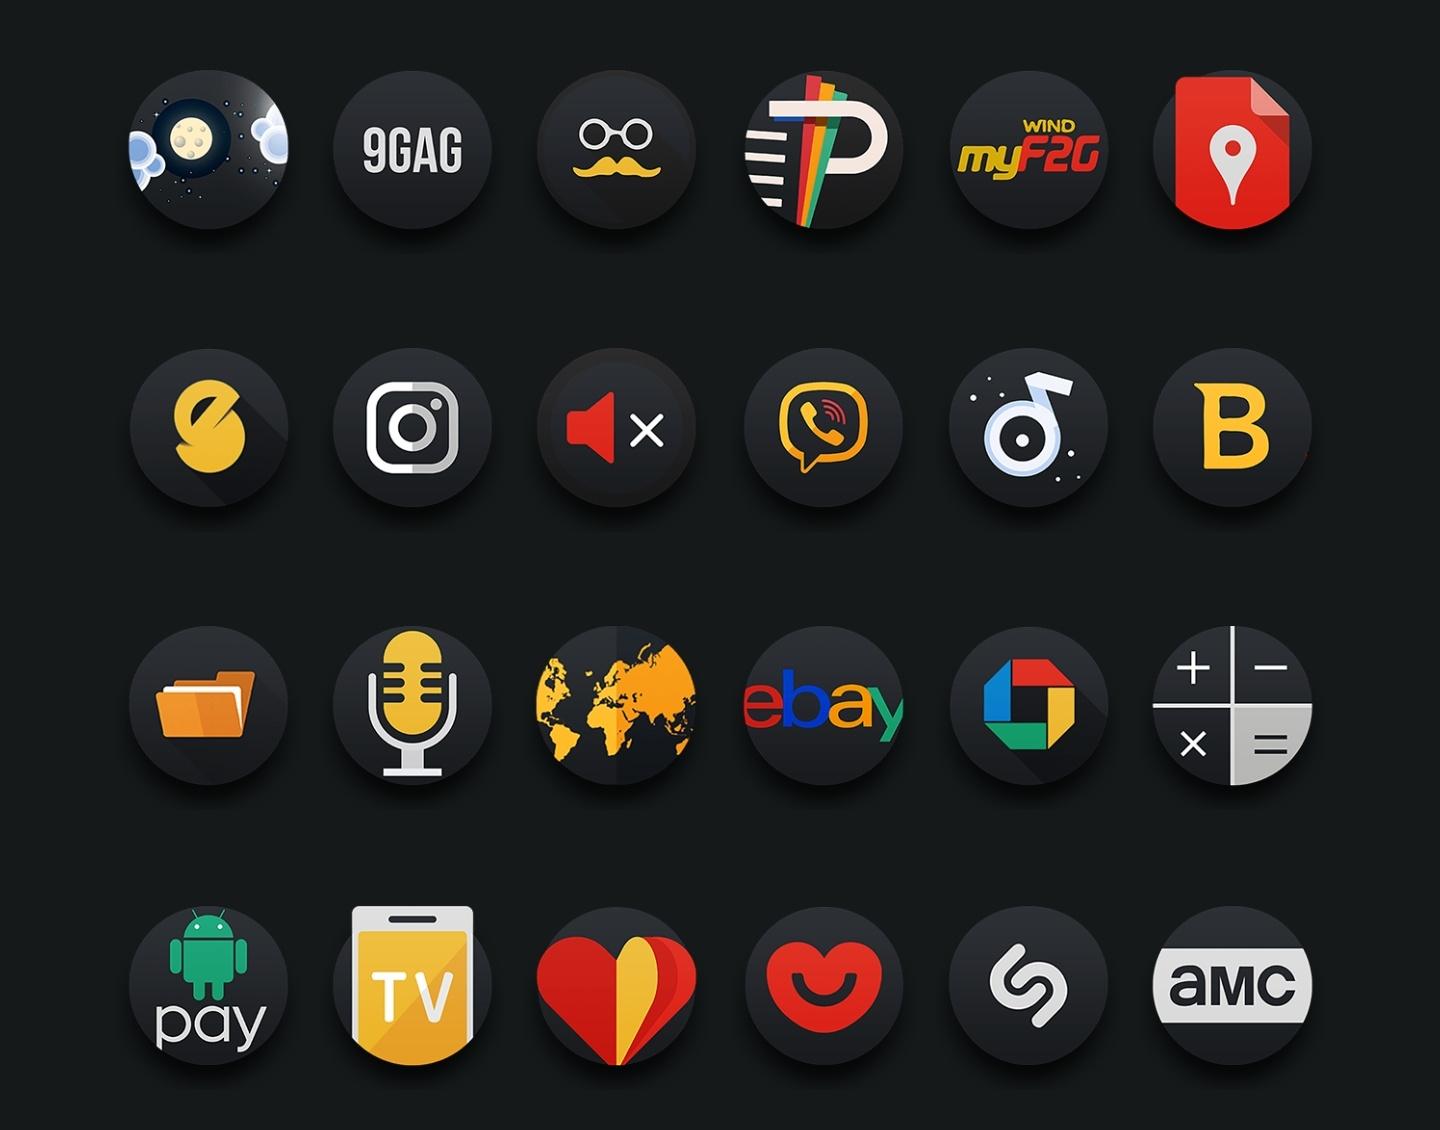 Пак иконок. Пак icon. Ion иконка. Пак иконок для приложений для телефона в чёрном стиле.